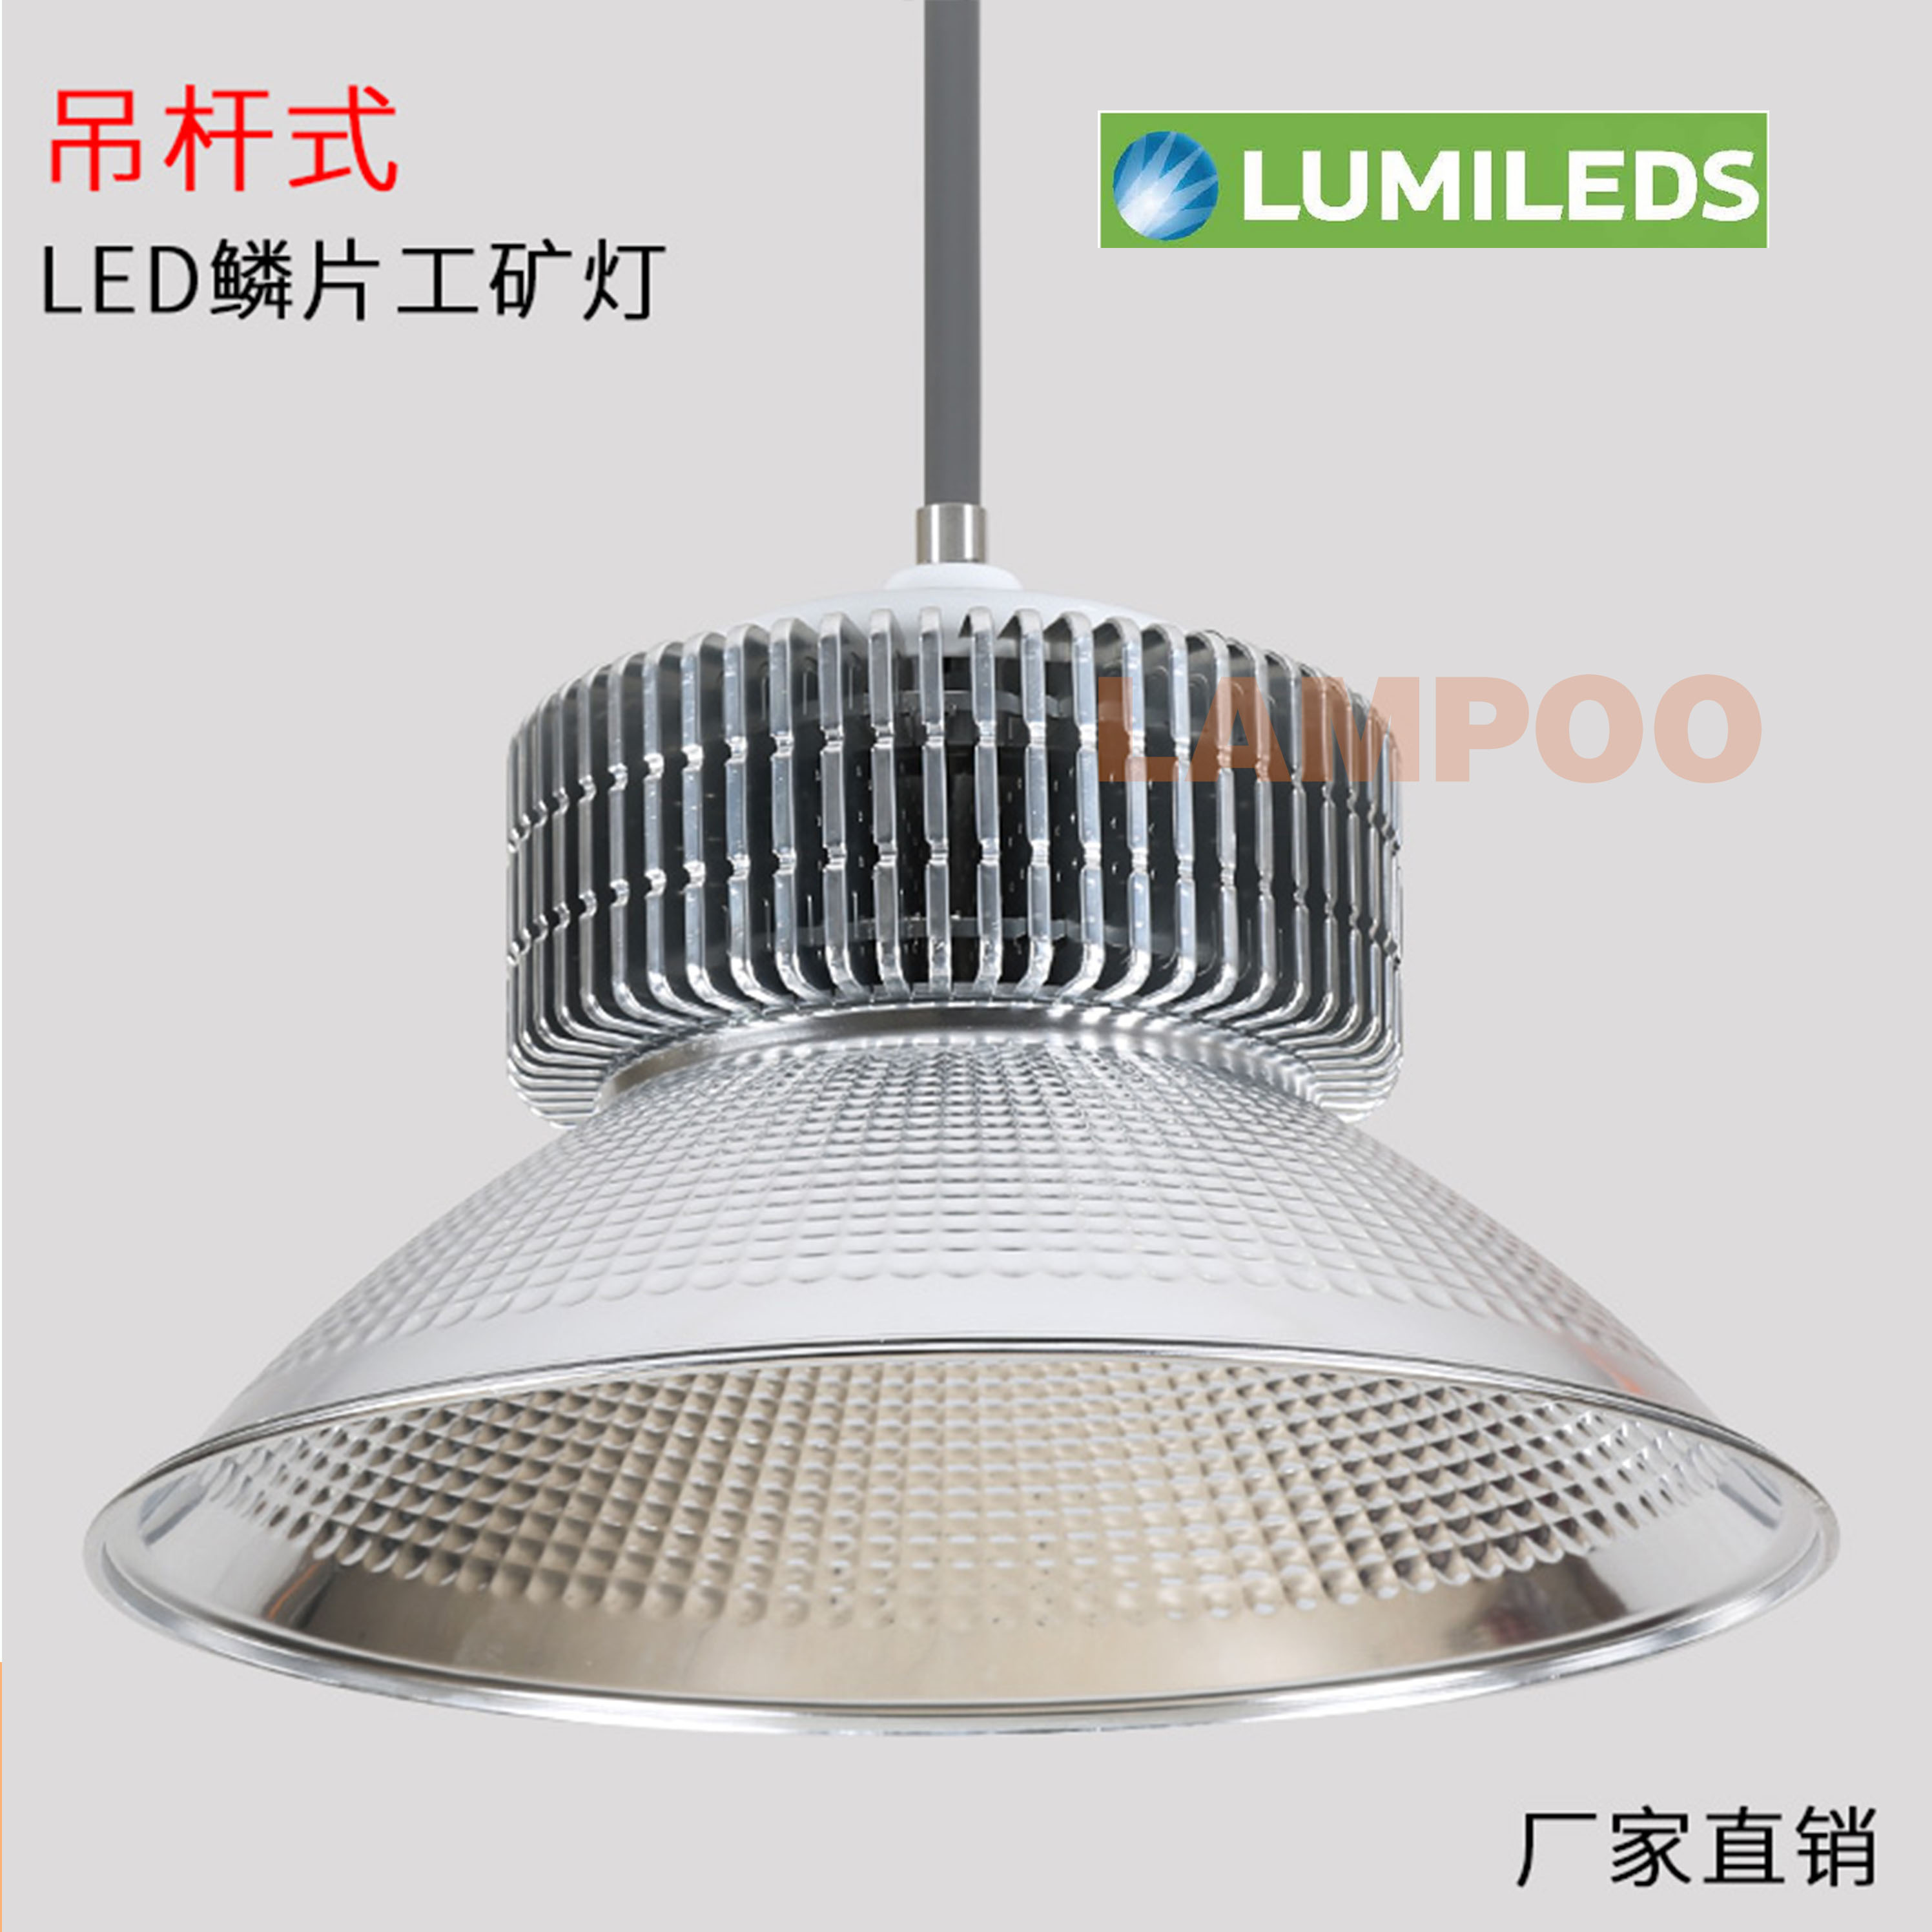 广东LED鳍片式工矿灯生产厂家 东莞供应直销LED工矿灯批发价格图片